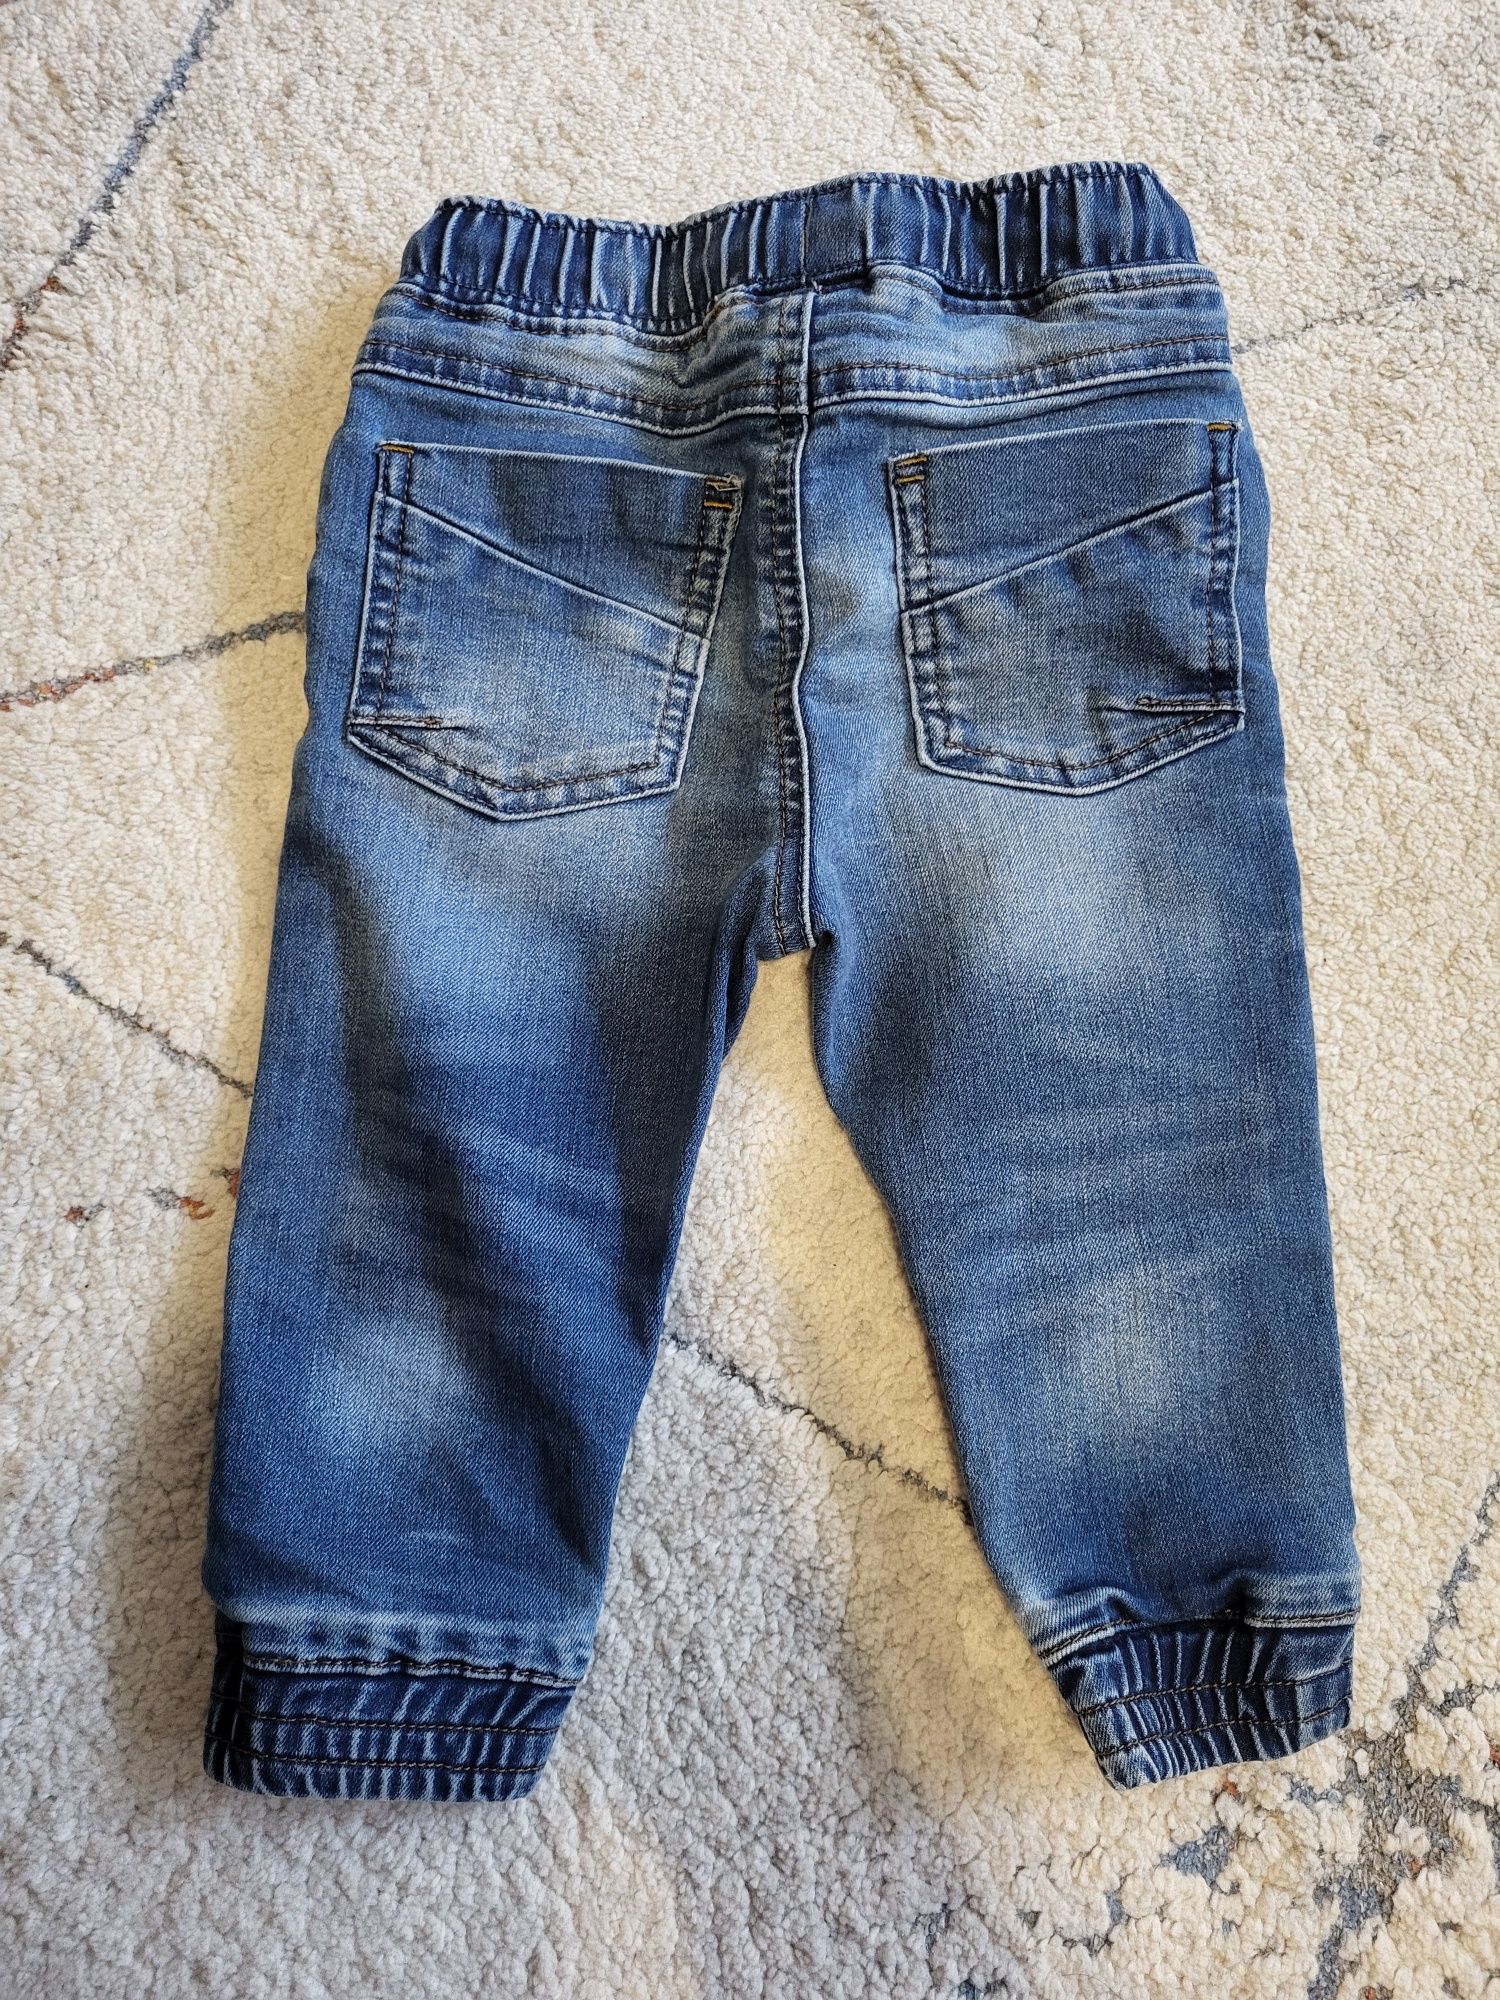 Spodnie dżinsowe chłopięce jeansy 9-12 next